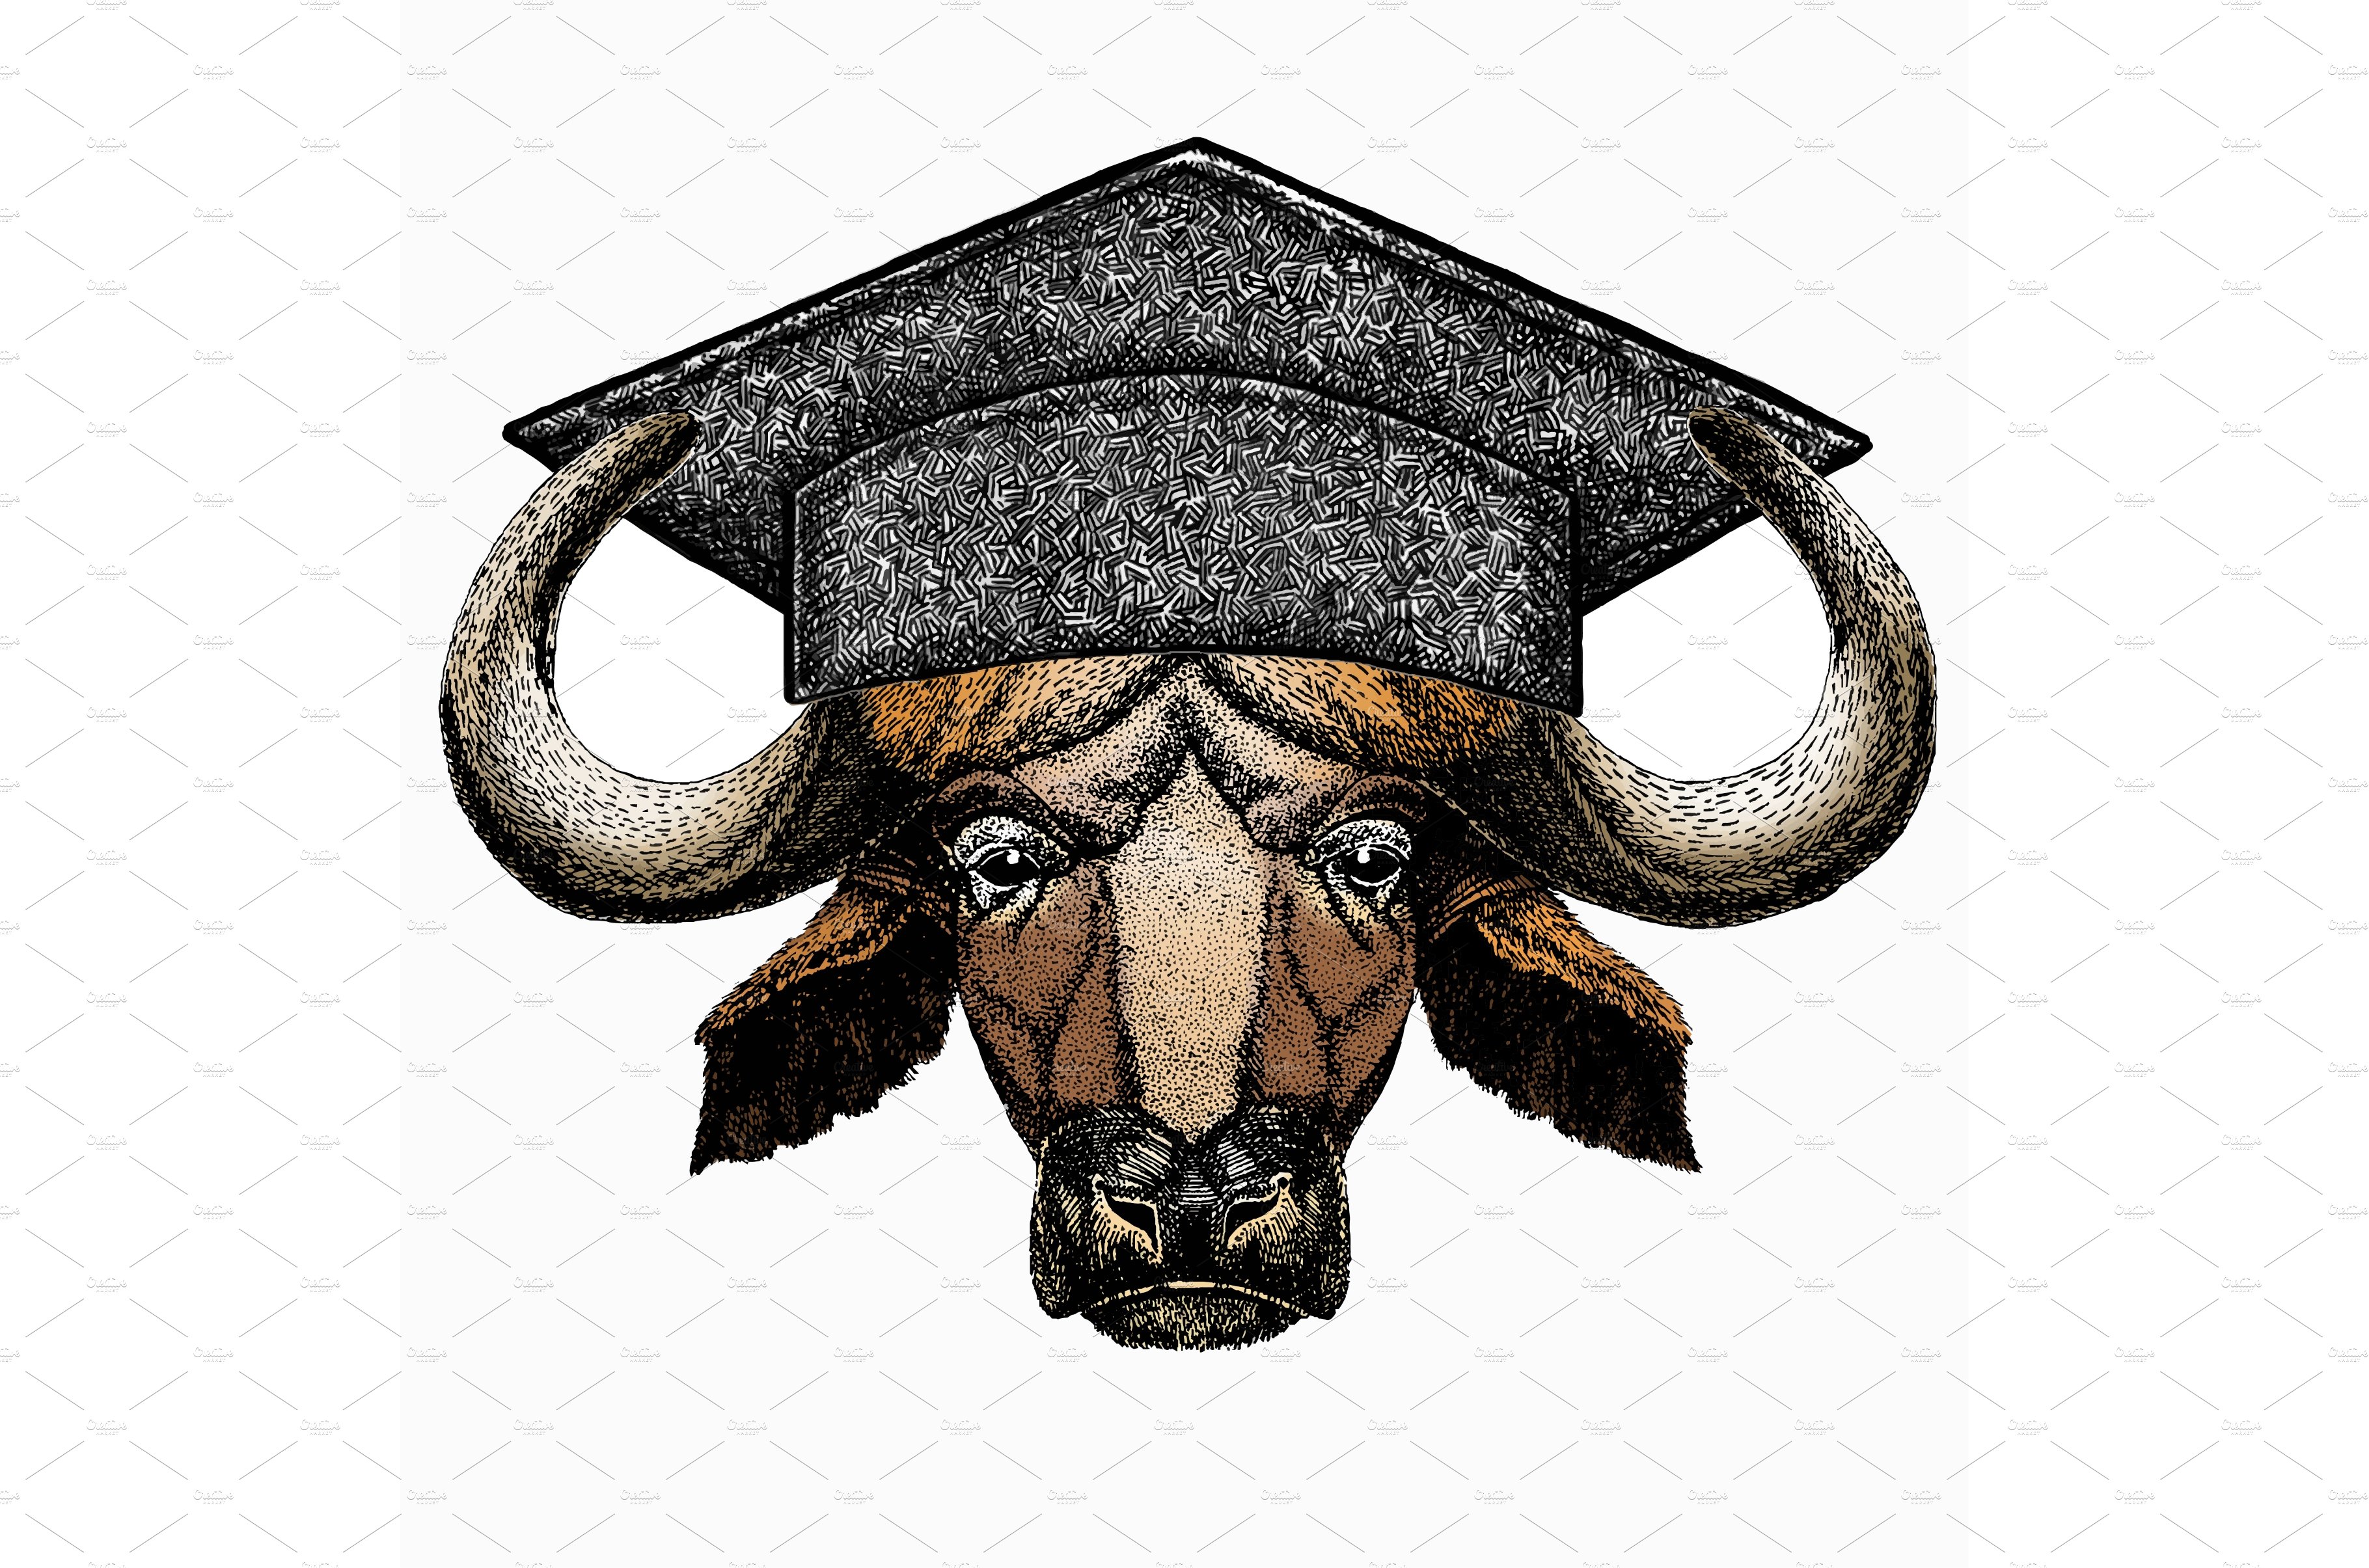 Buffalo Bison mascot head. Square cover image.